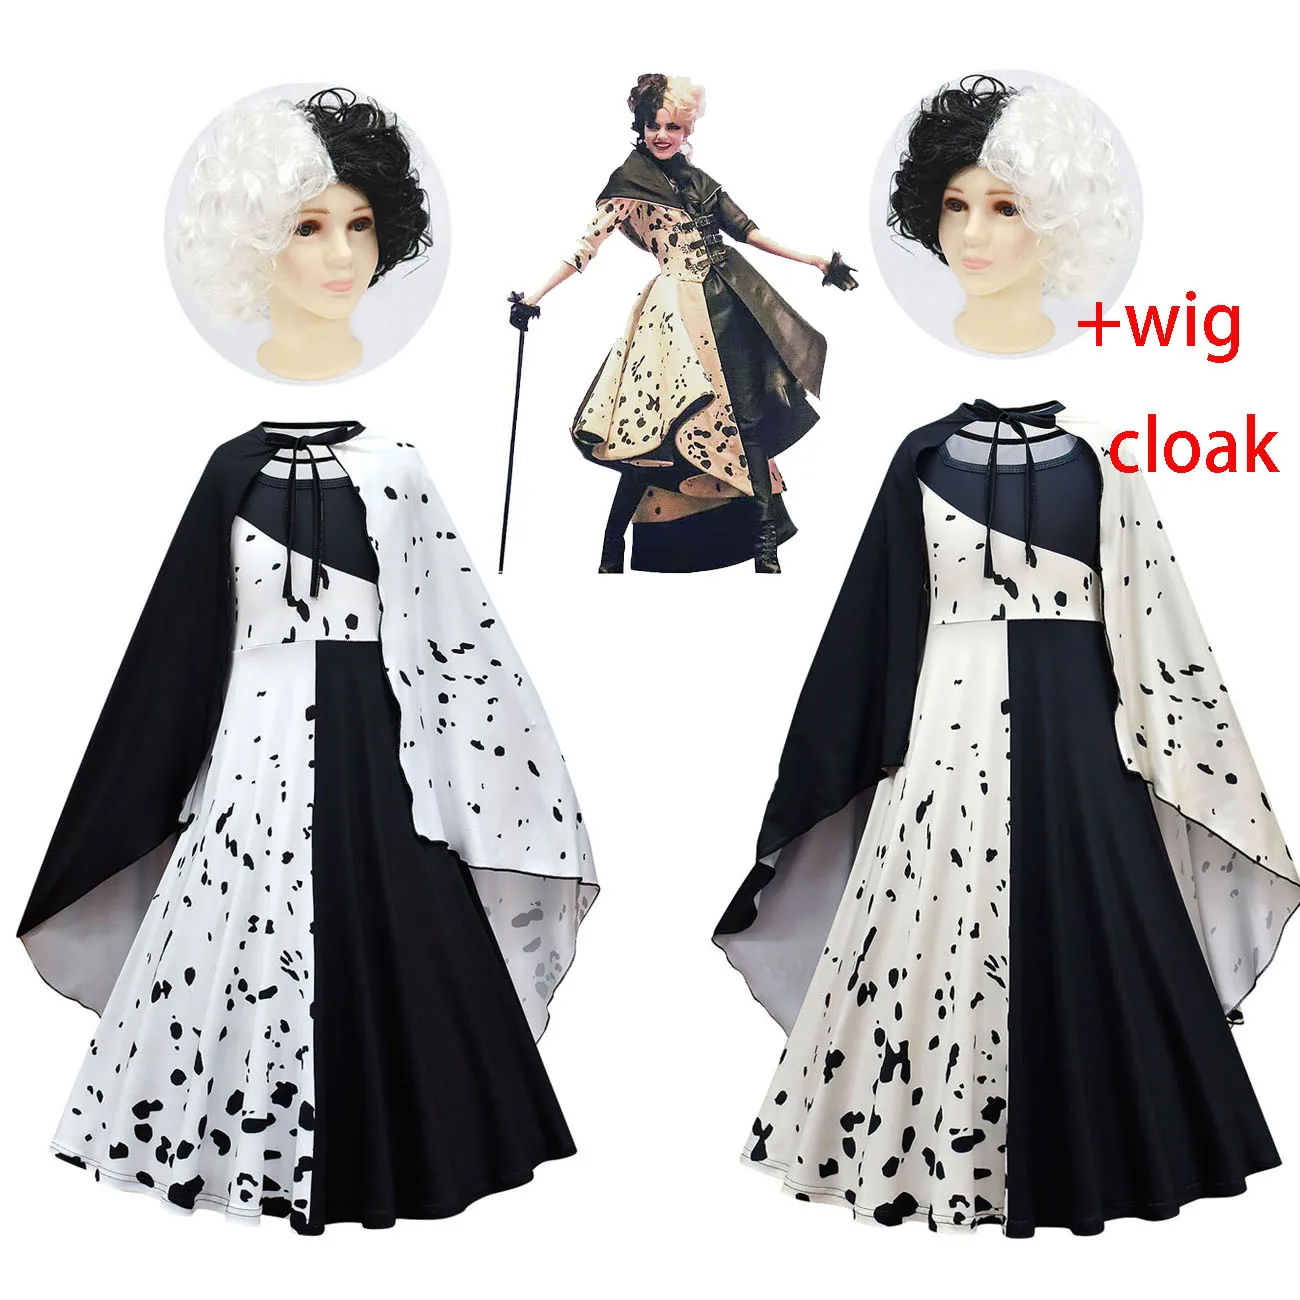 

2021 косплей костюм из фильма Cruella De Vil для девочек, черно-белое платье горничной, платье злой королевы, вечернее платье для вечеринки, накидка ...